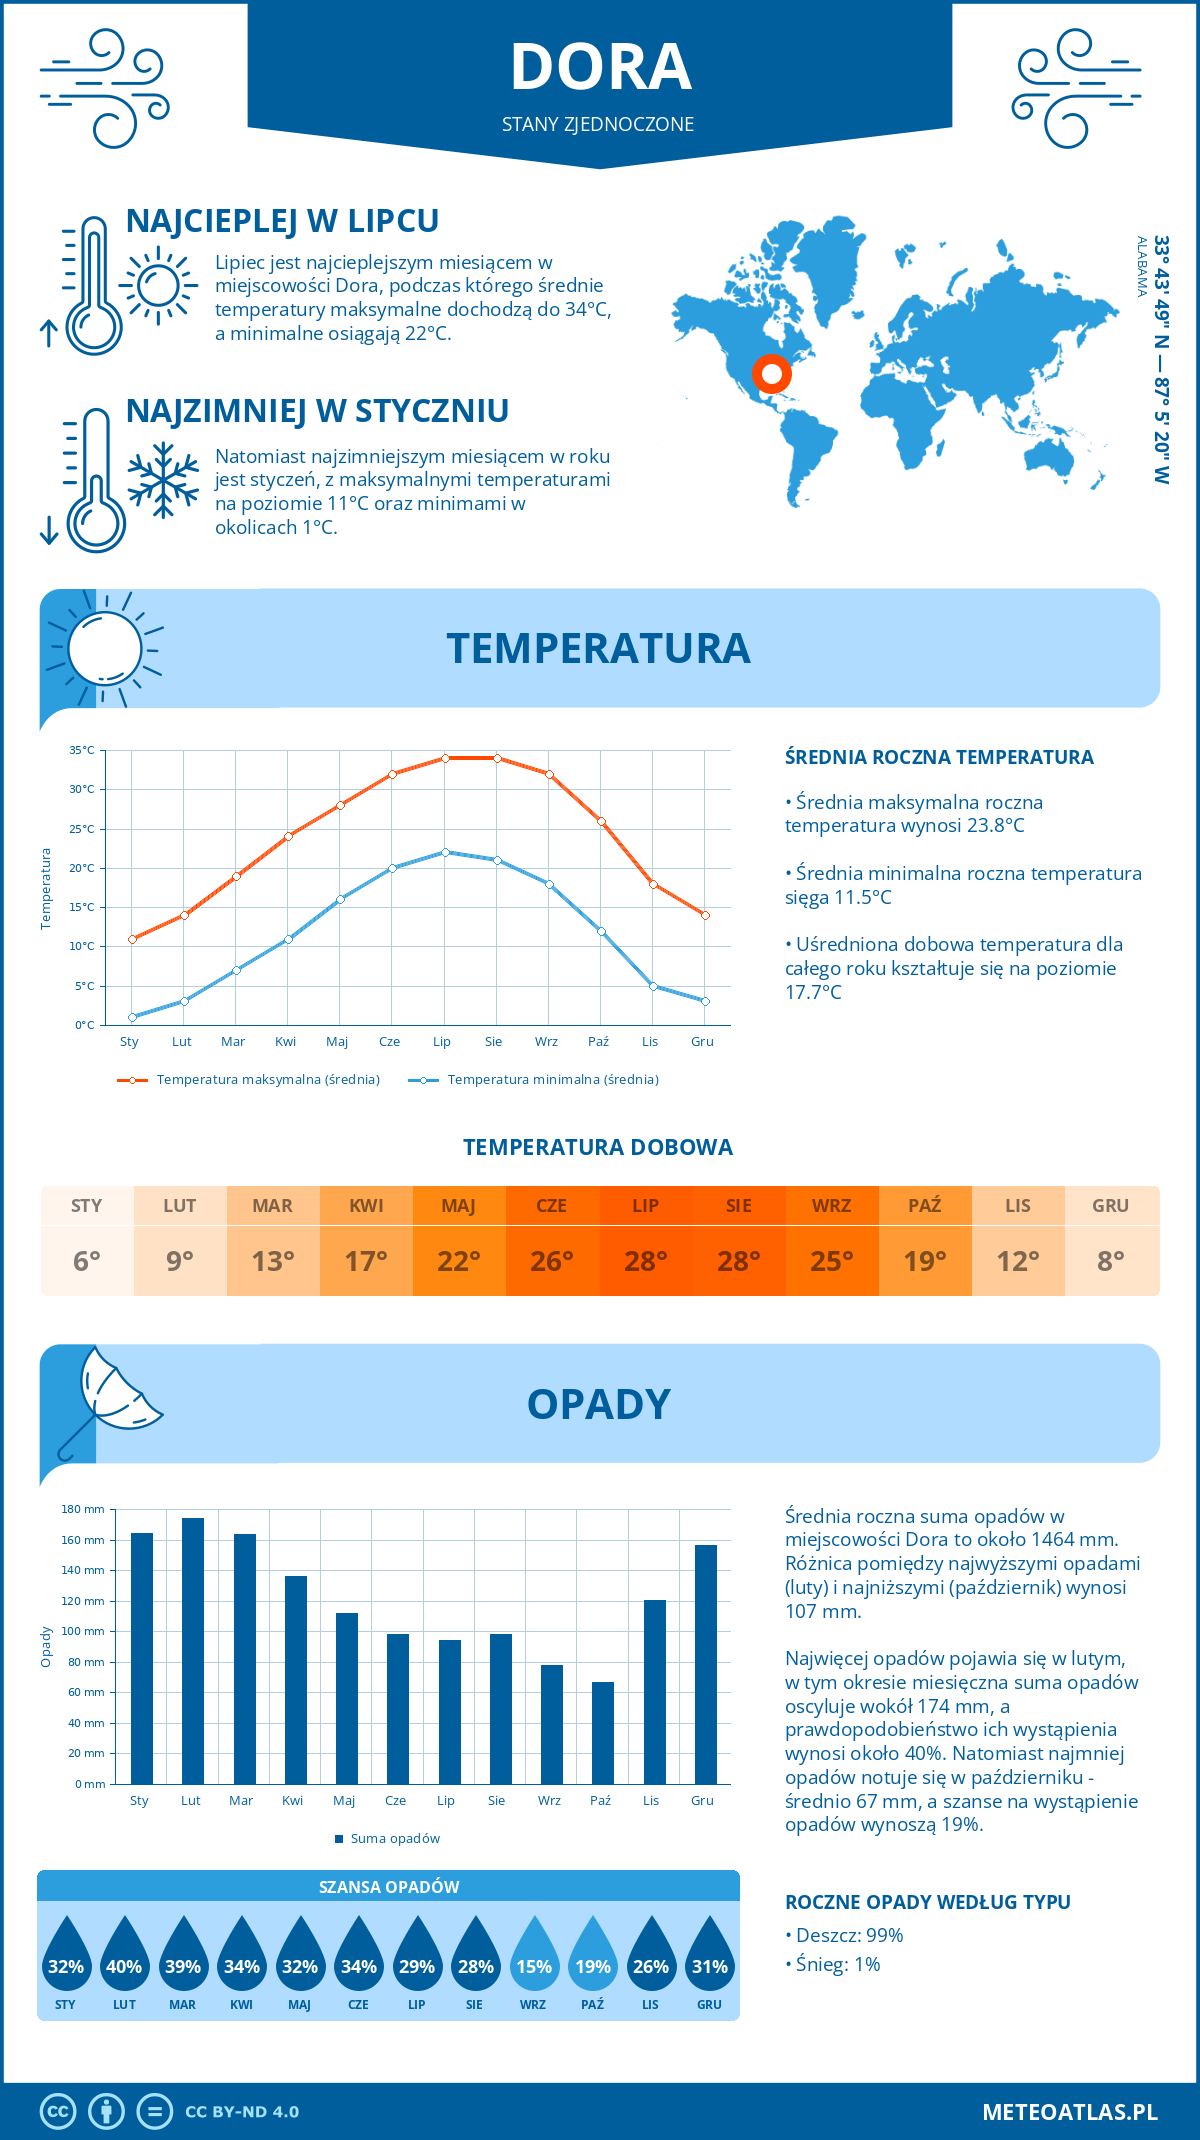 Pogoda Dora (Stany Zjednoczone). Temperatura oraz opady.